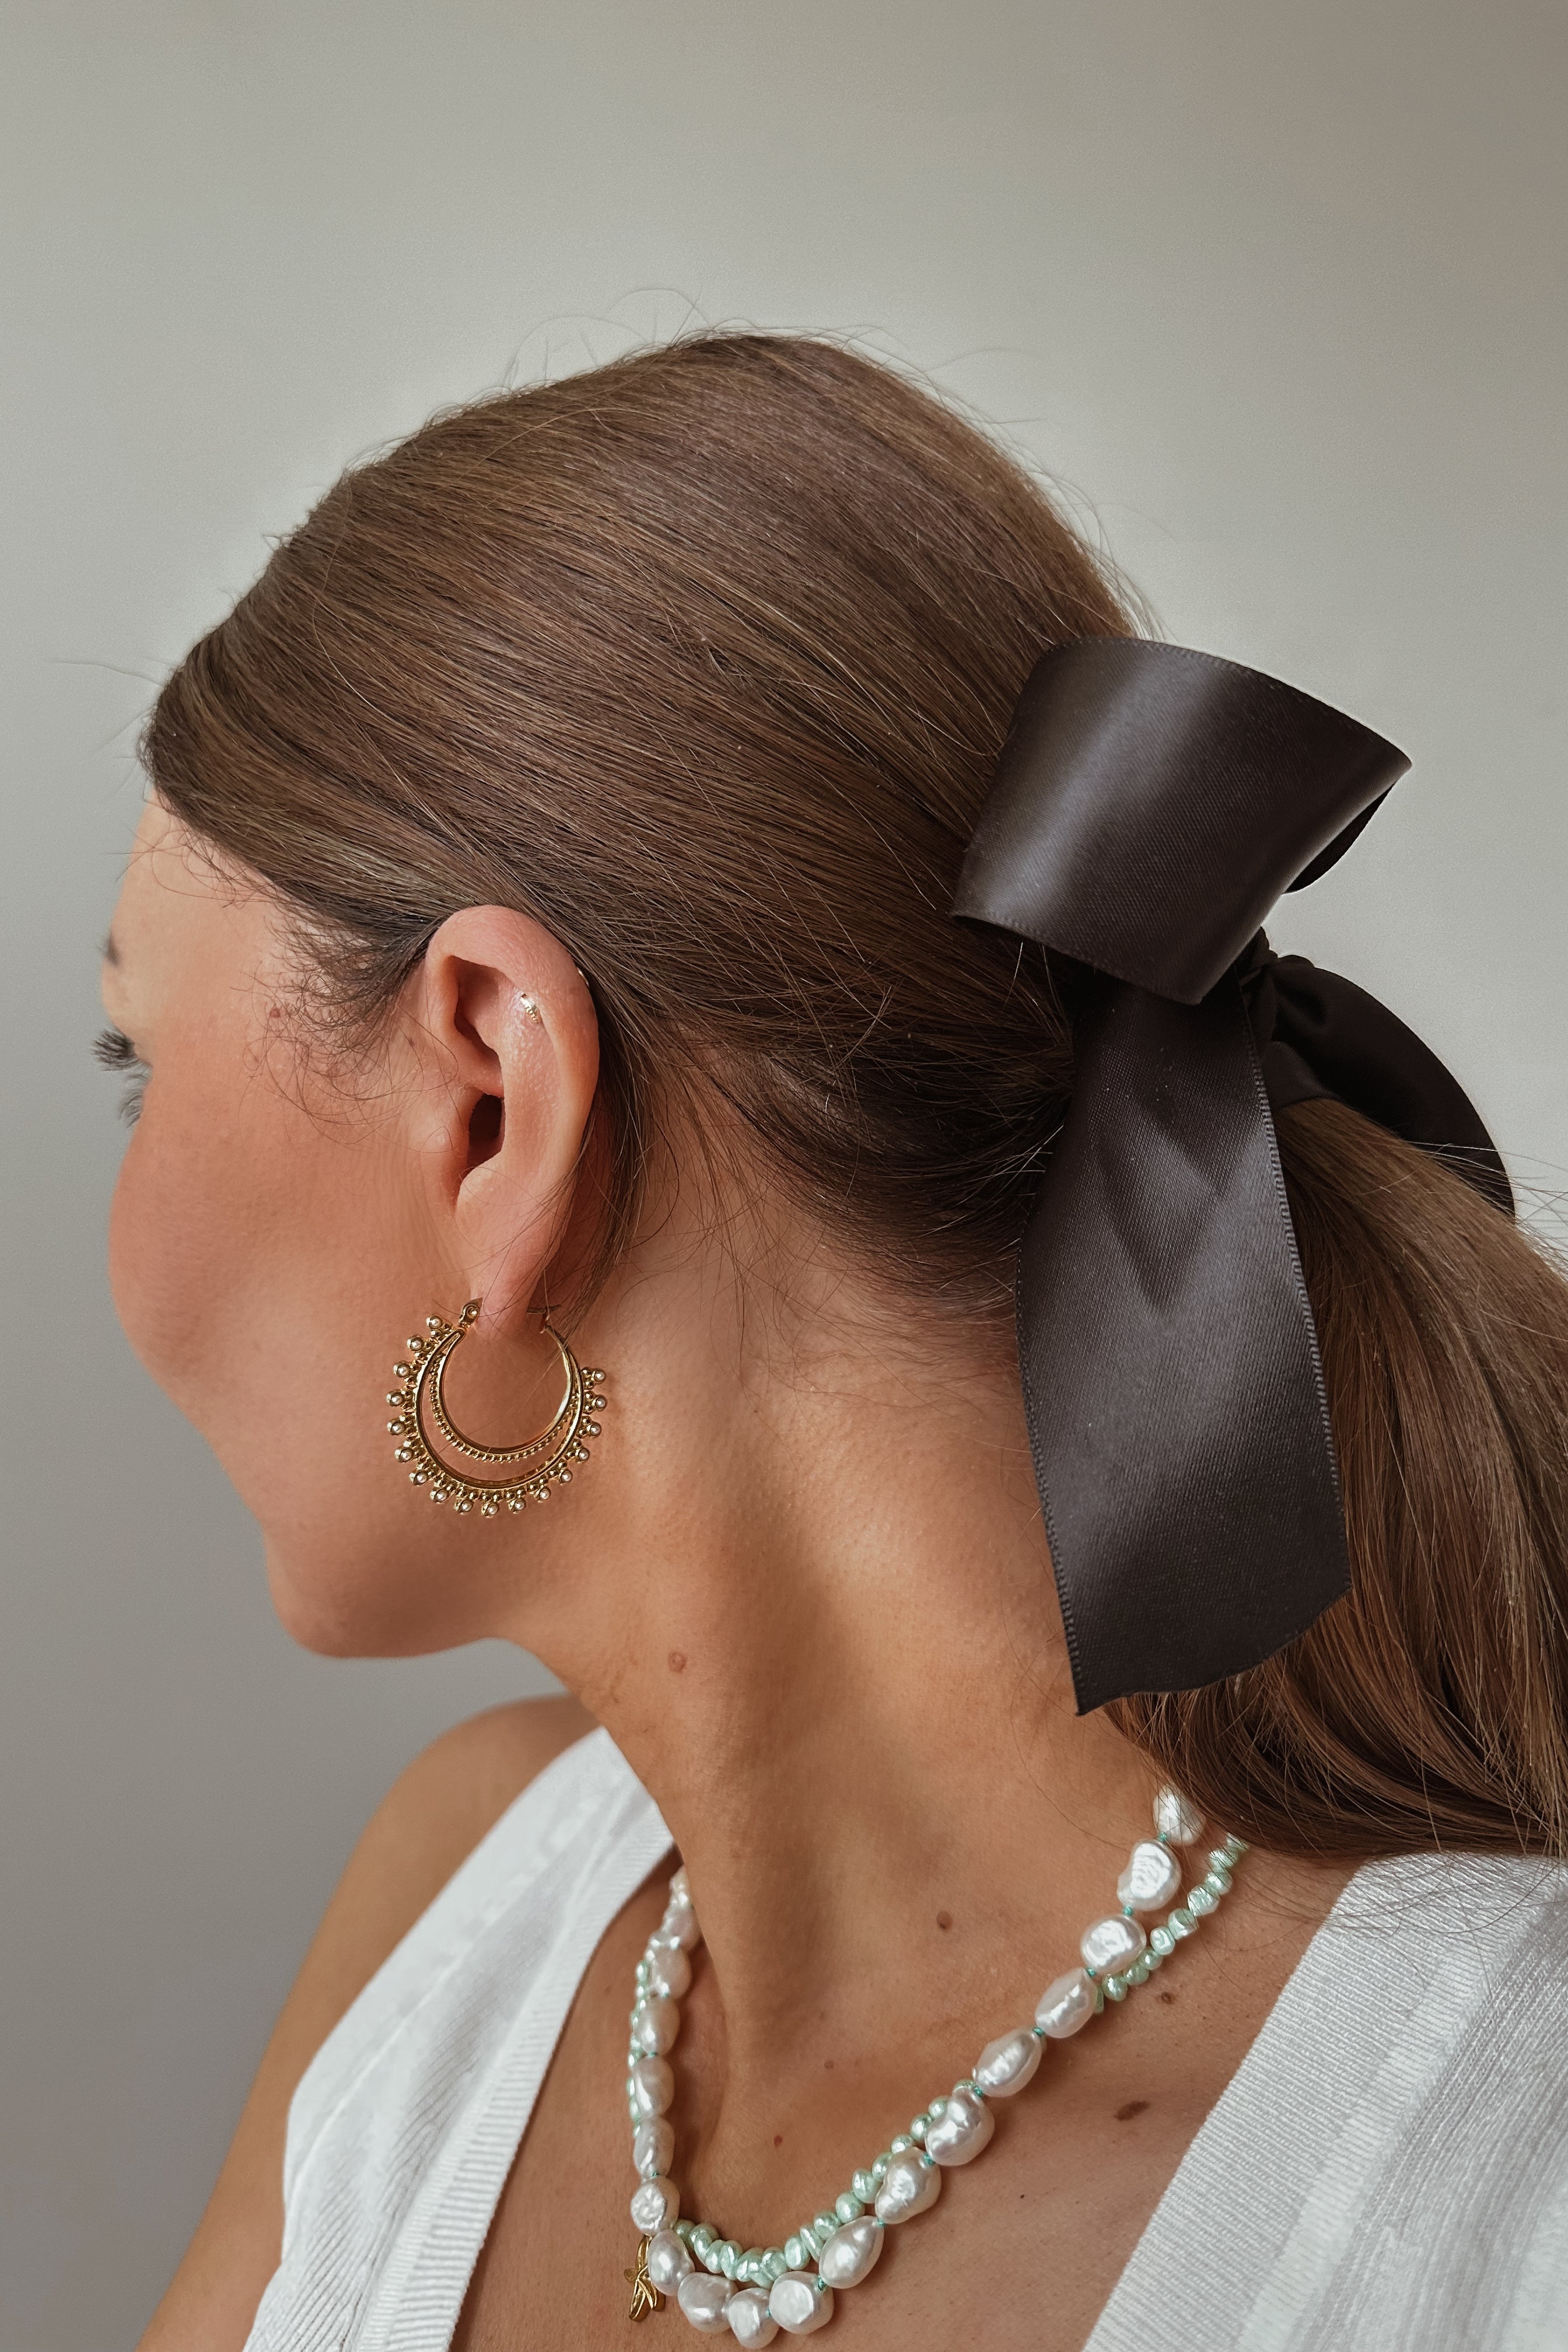 Waya Earrings - Boutique Minimaliste has waterproof, durable, elegant and vintage inspired jewelry